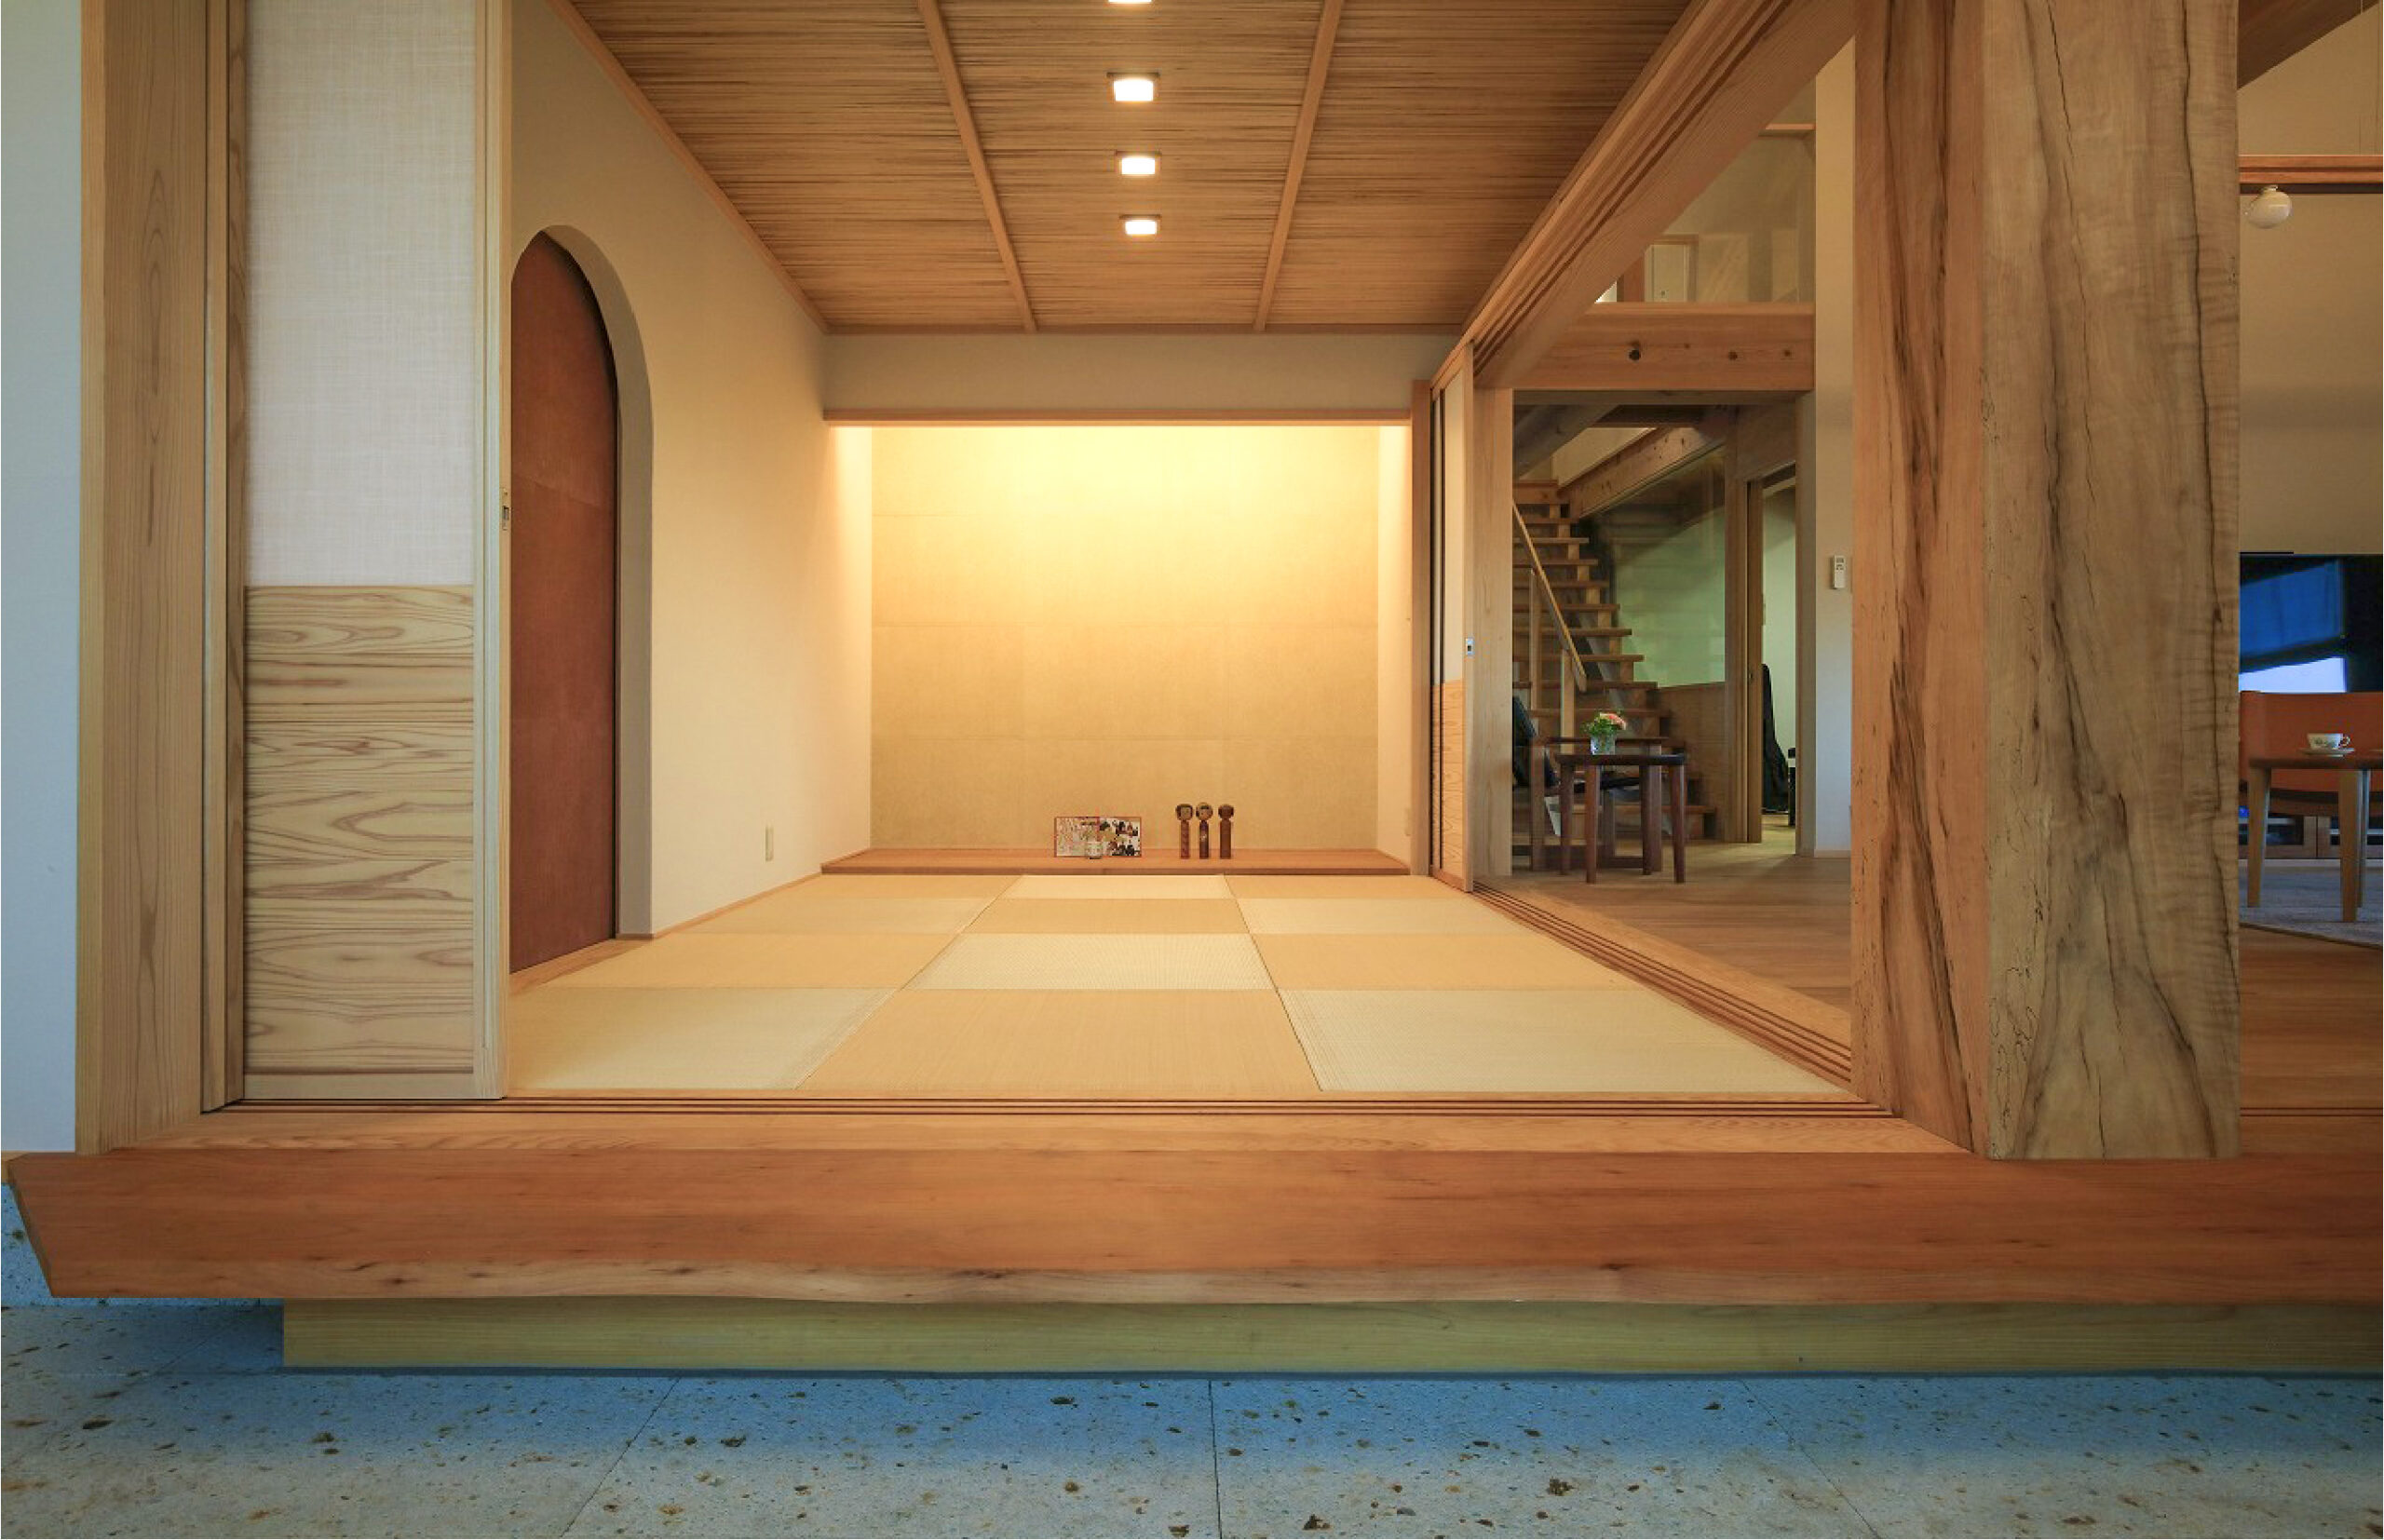 床材に名栗加工を施した栗材を使用した床の間が迎える和室なら埼玉県本庄市の小林建設